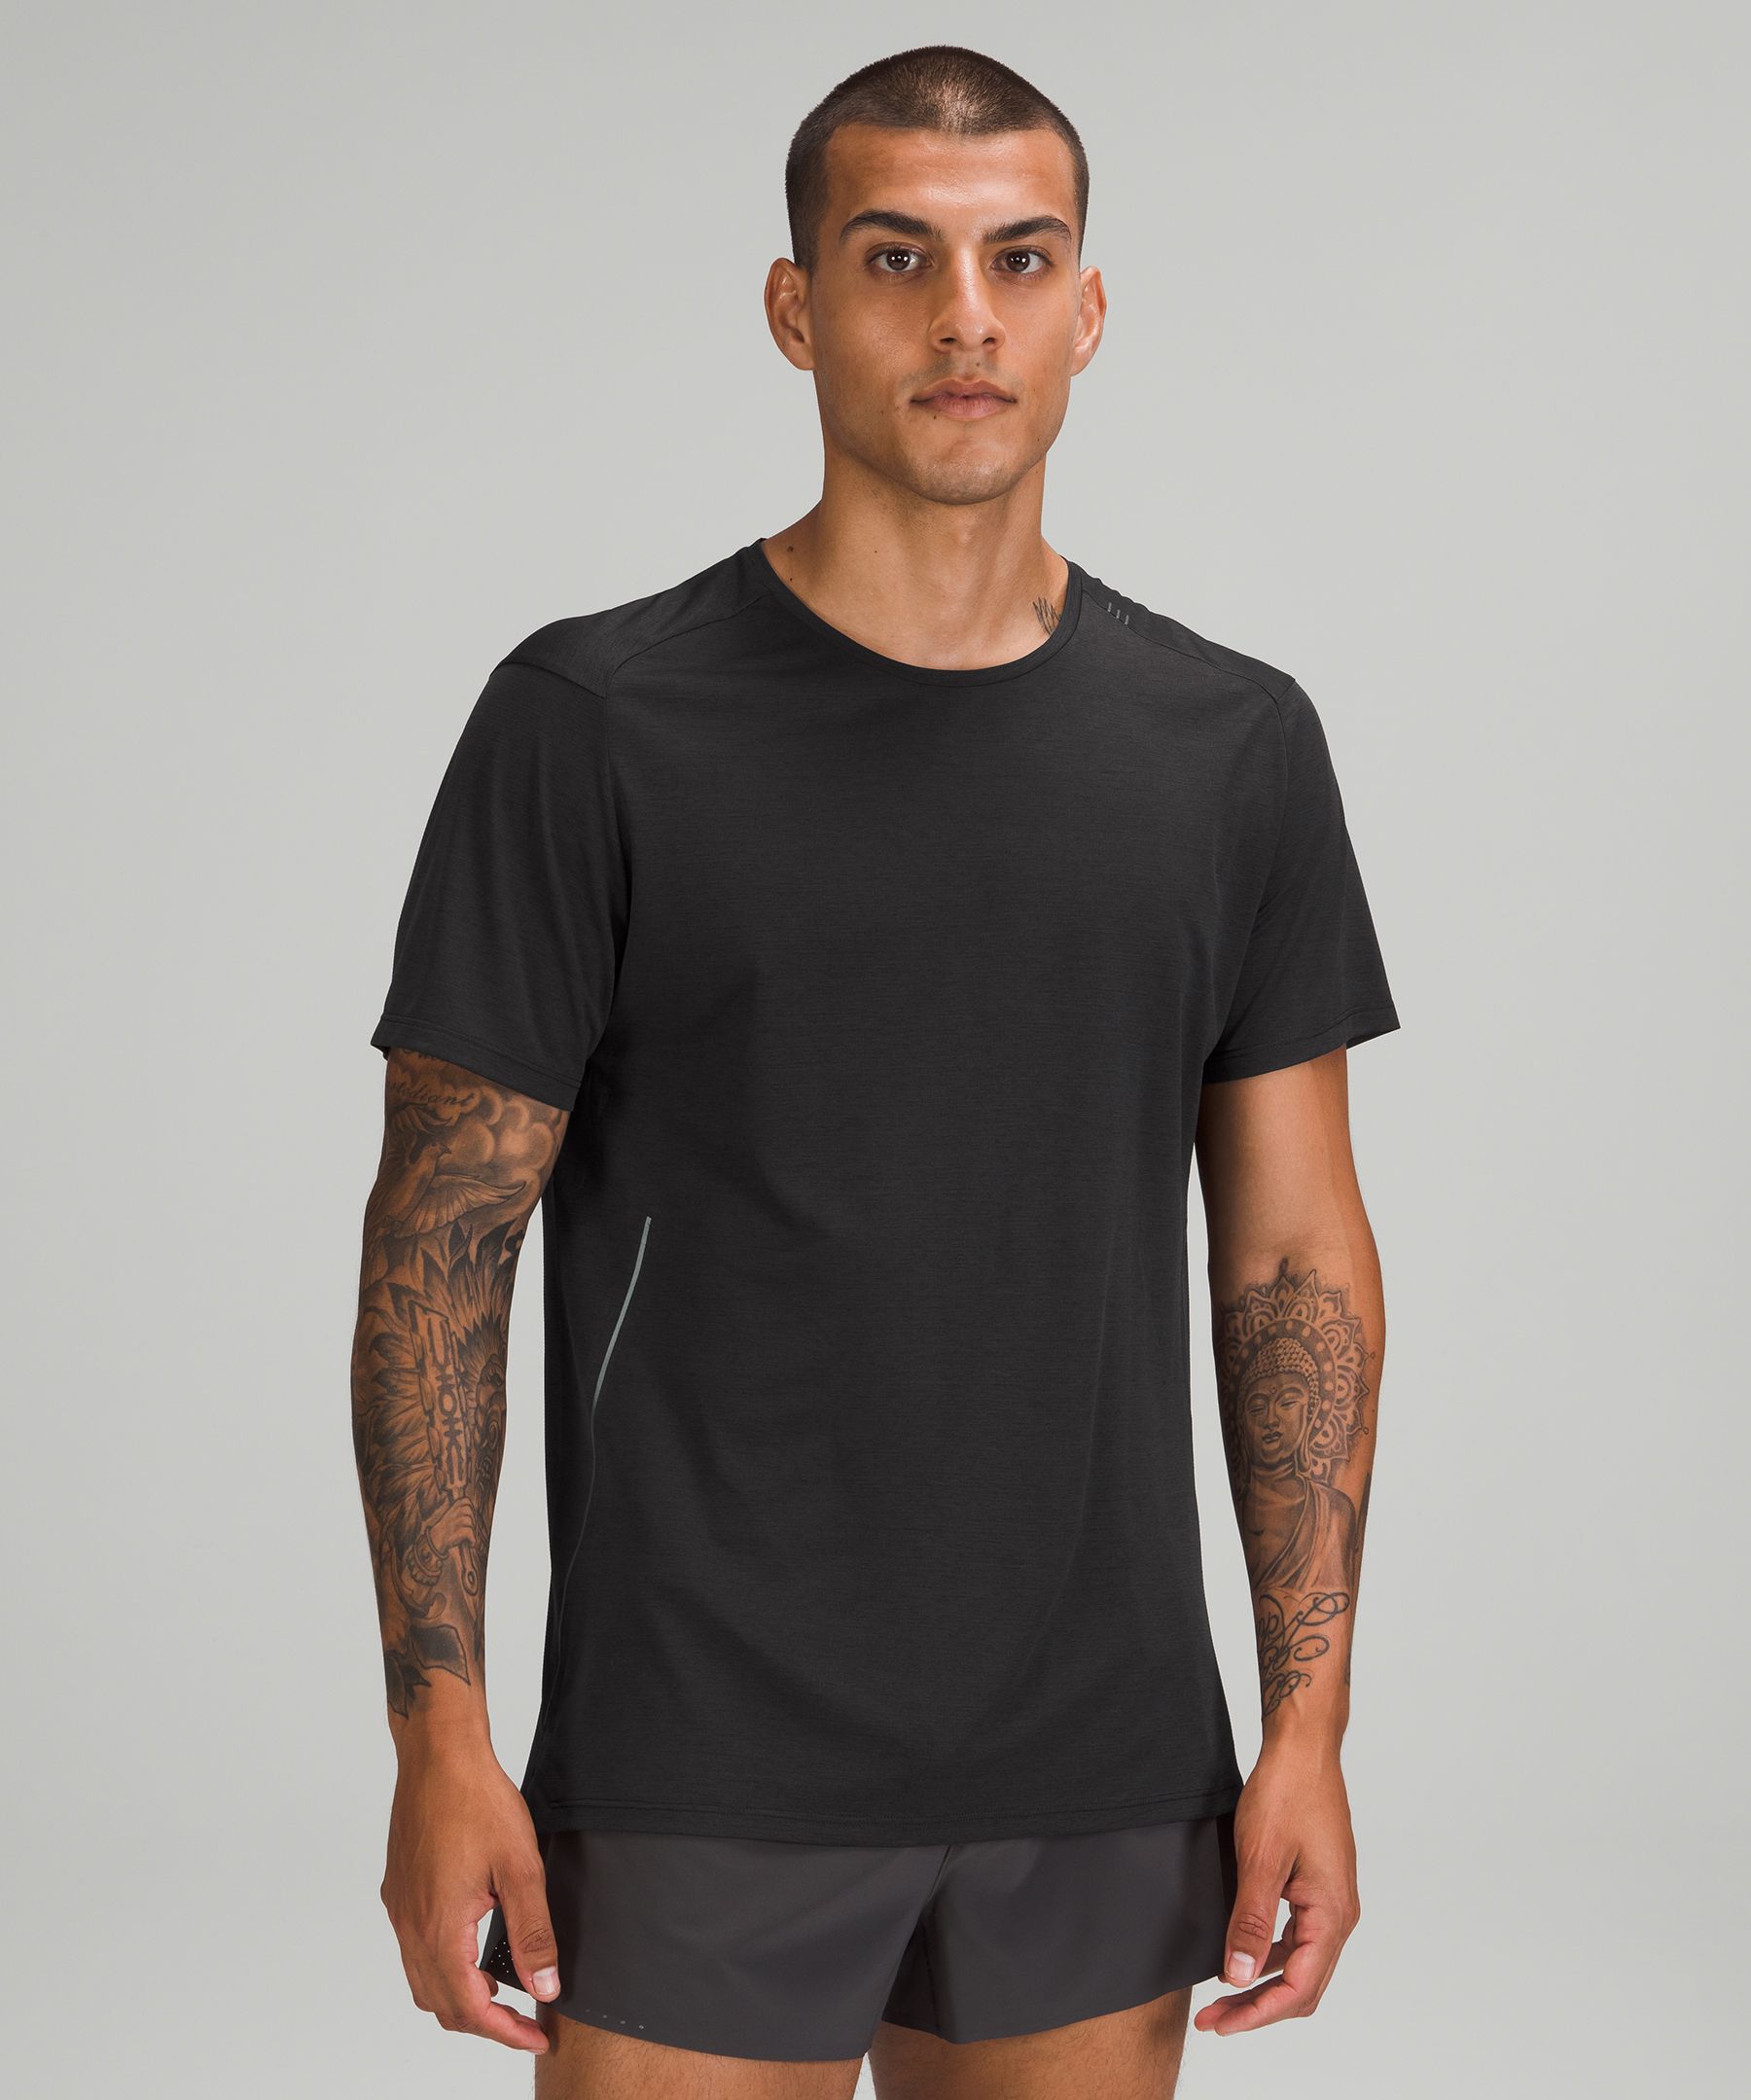 Men's Short Sleeve Shirts | lululemon